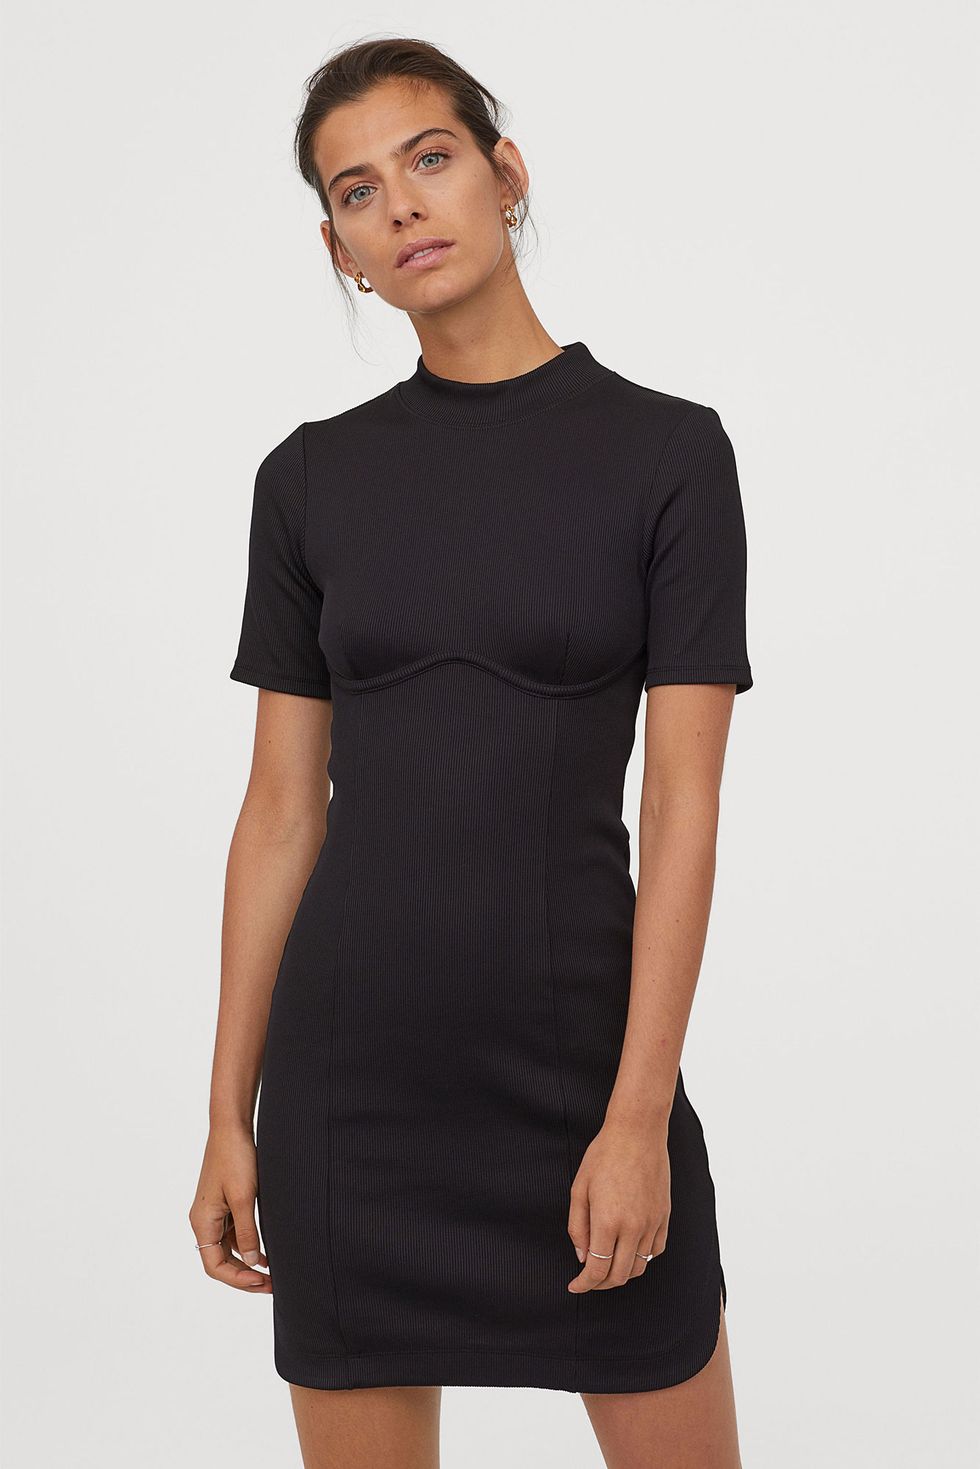 presente Deflector Gorrión El vestido corto negro de H&M para evitar el efecto pecho caído